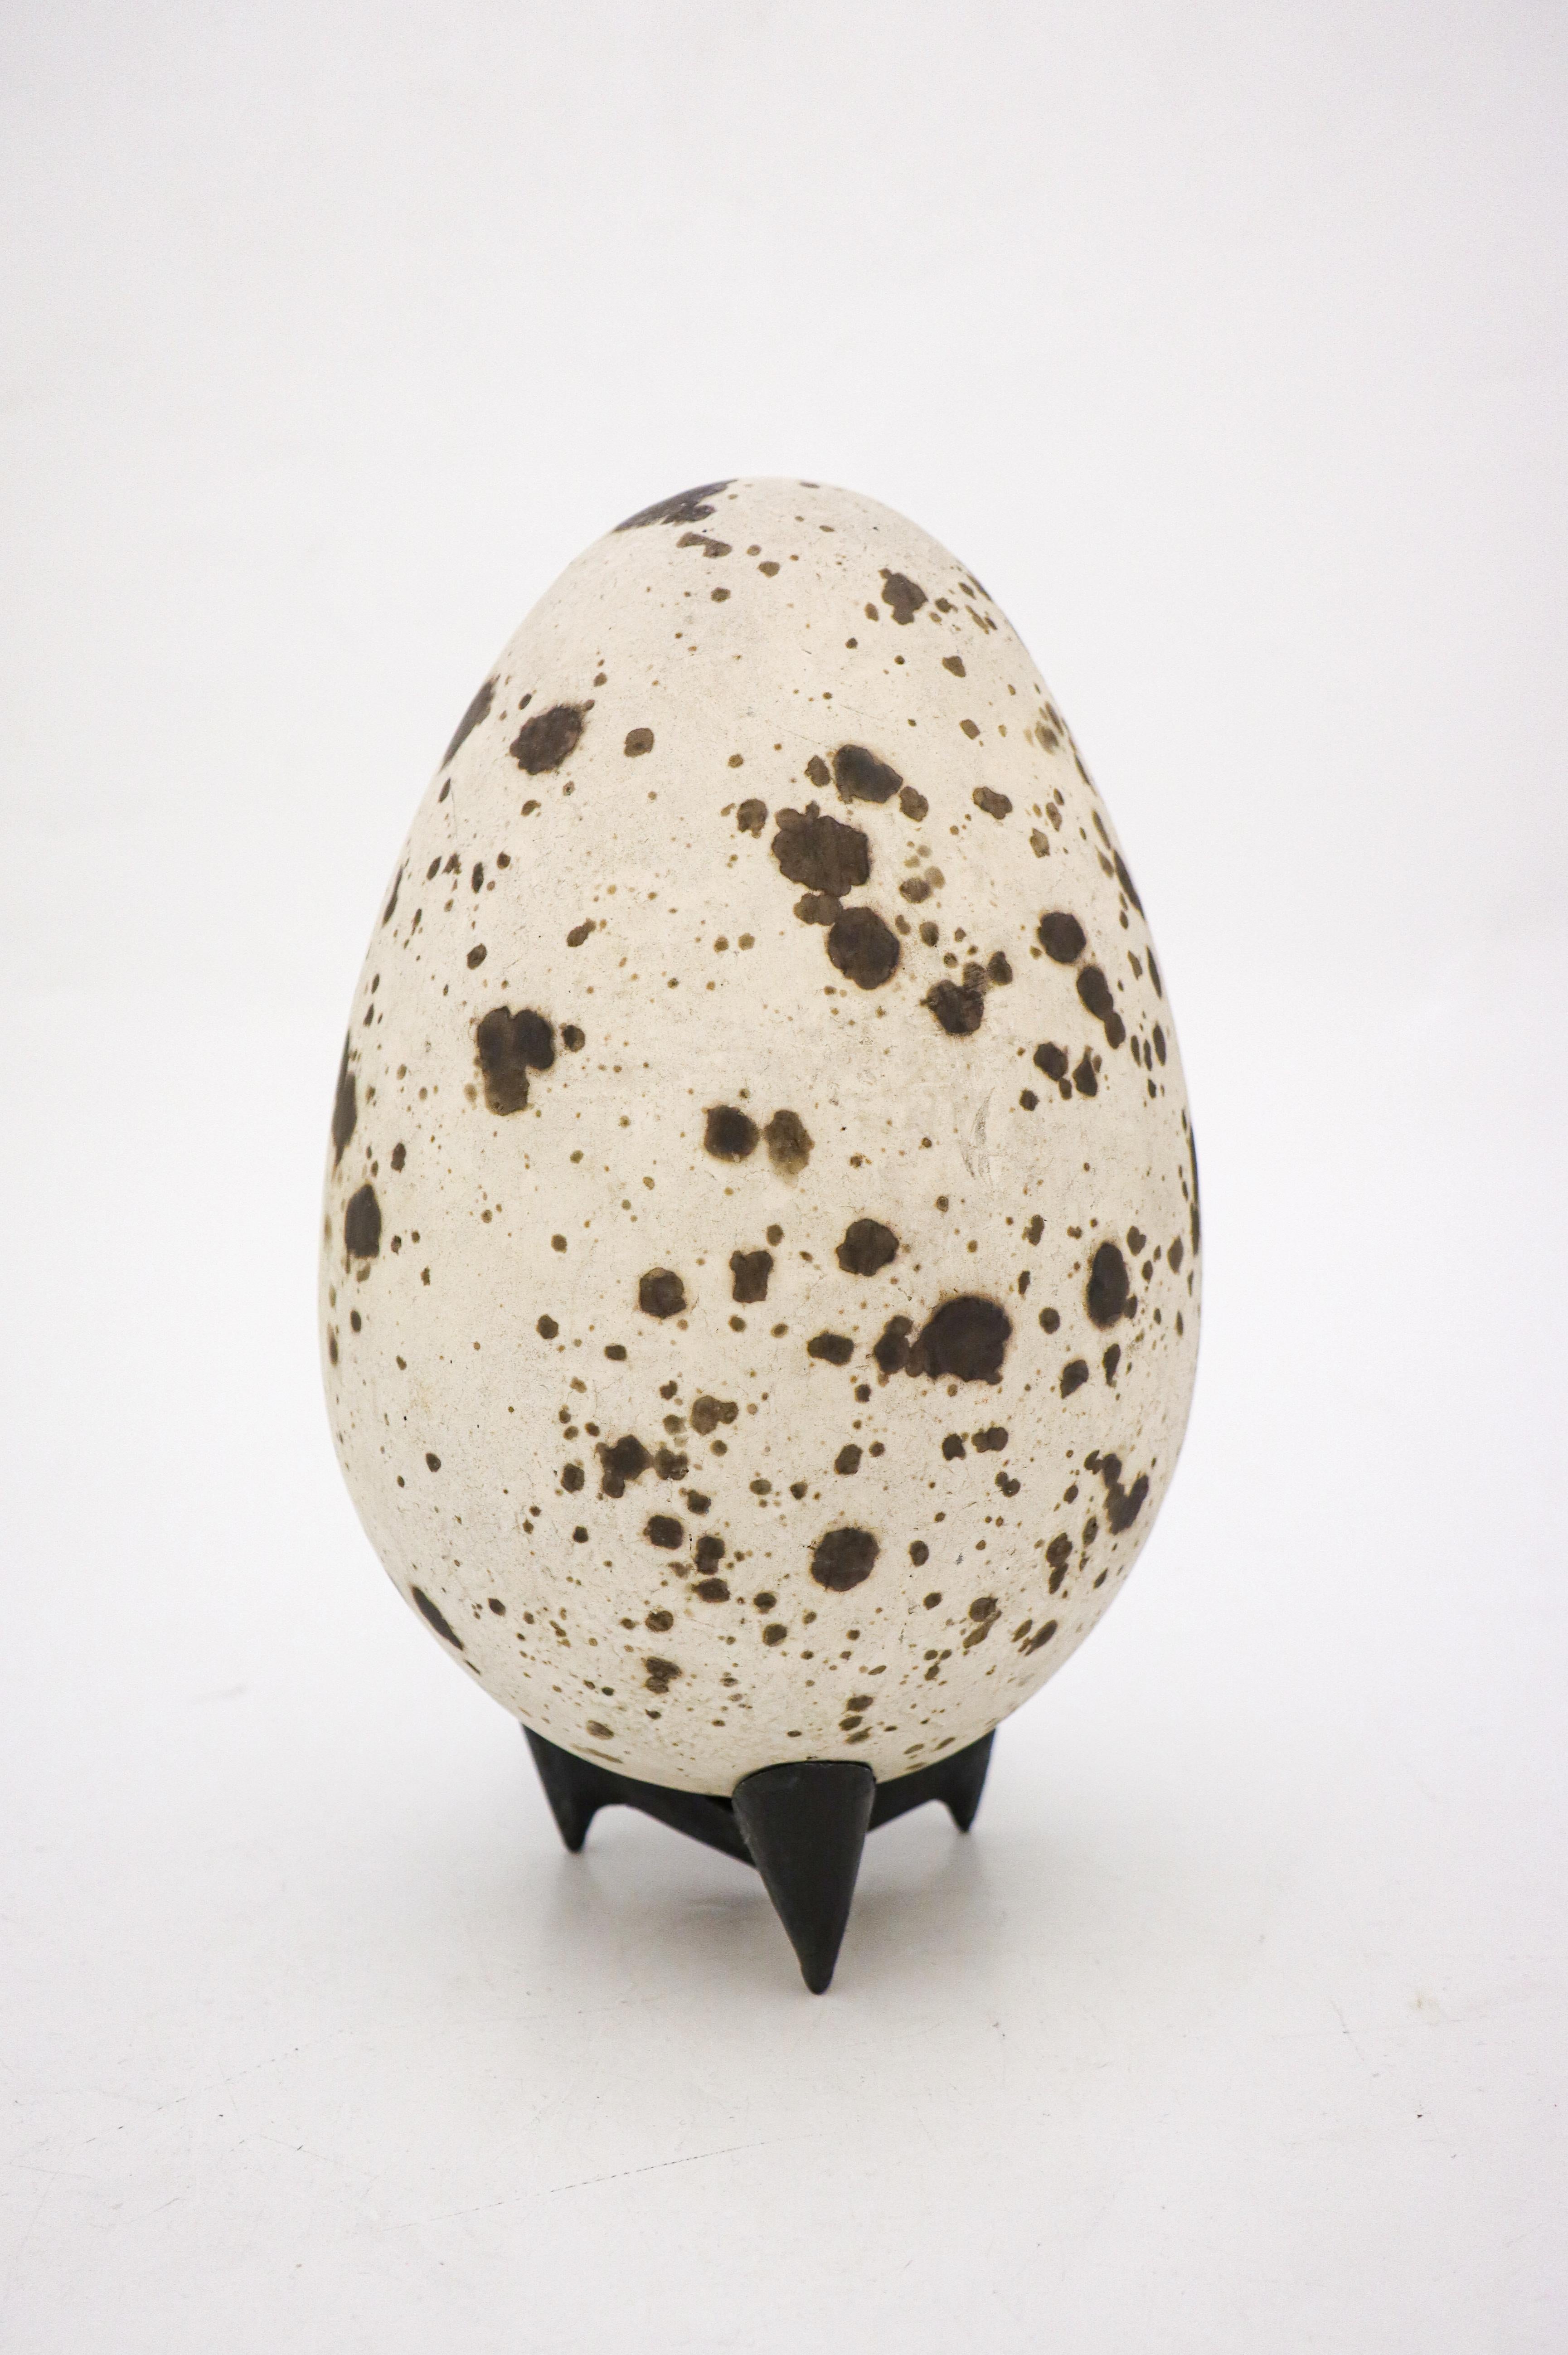 Das Ei wurde von dem schwedischen Keramiker Hans Hedberg entworfen, der in Biot, Frankreich, lebte und arbeitete. Dieses Ei ist 25 cm (10